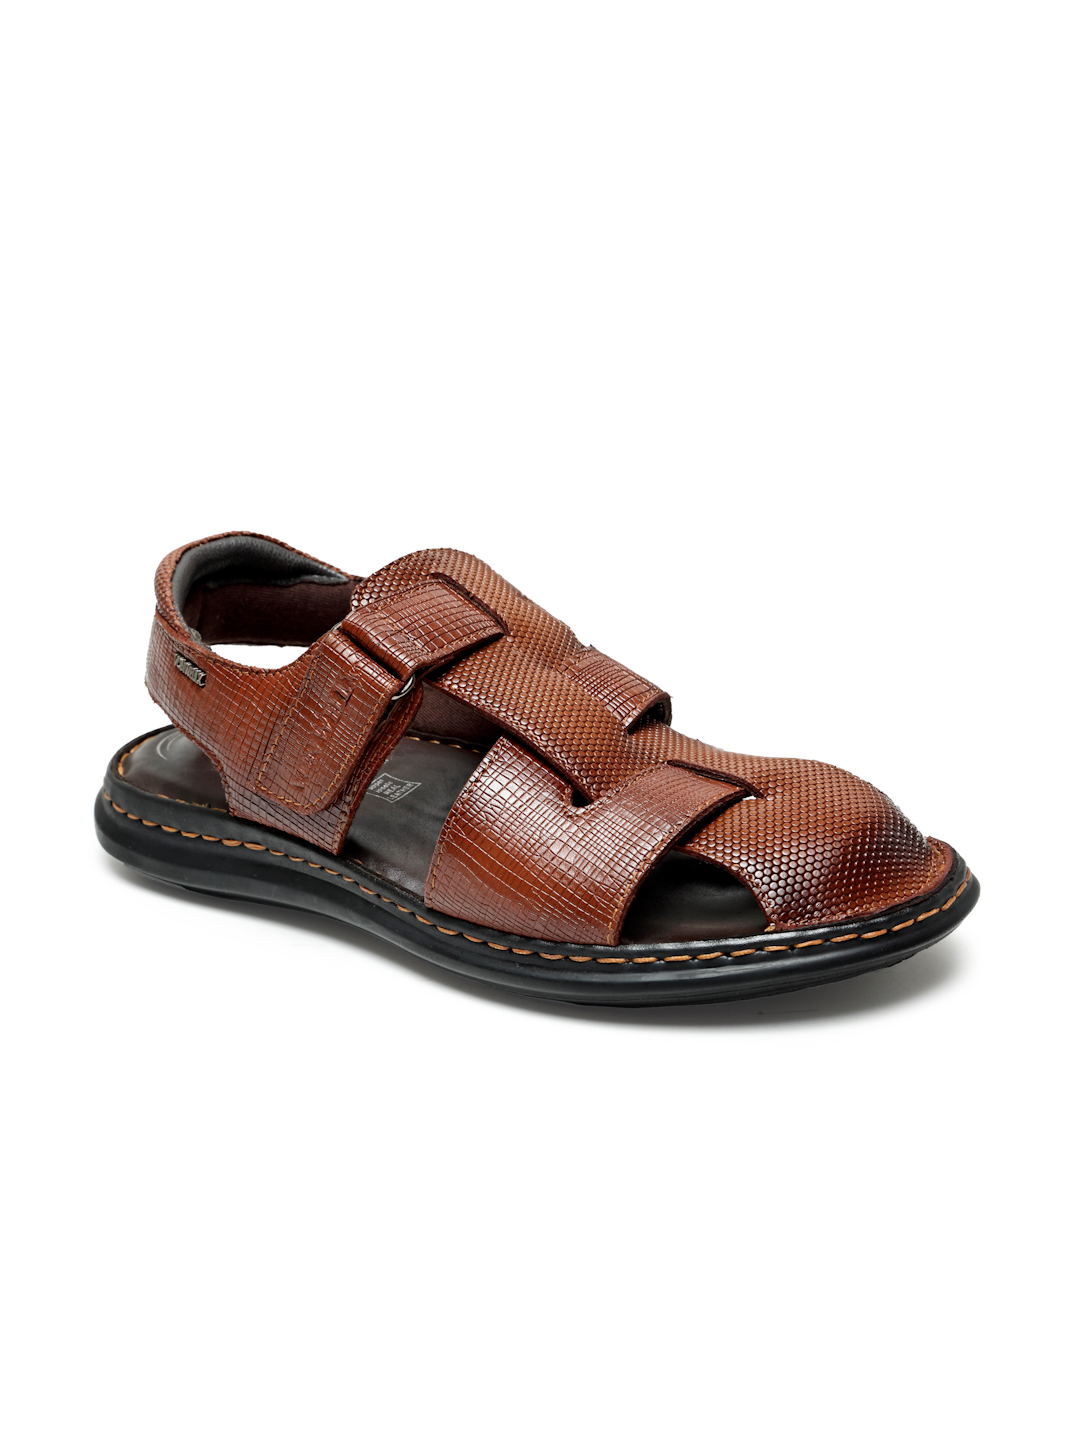 Buy Von Wellx Germany Comfort Men's Tan Sandals Morgen Online in Qatar